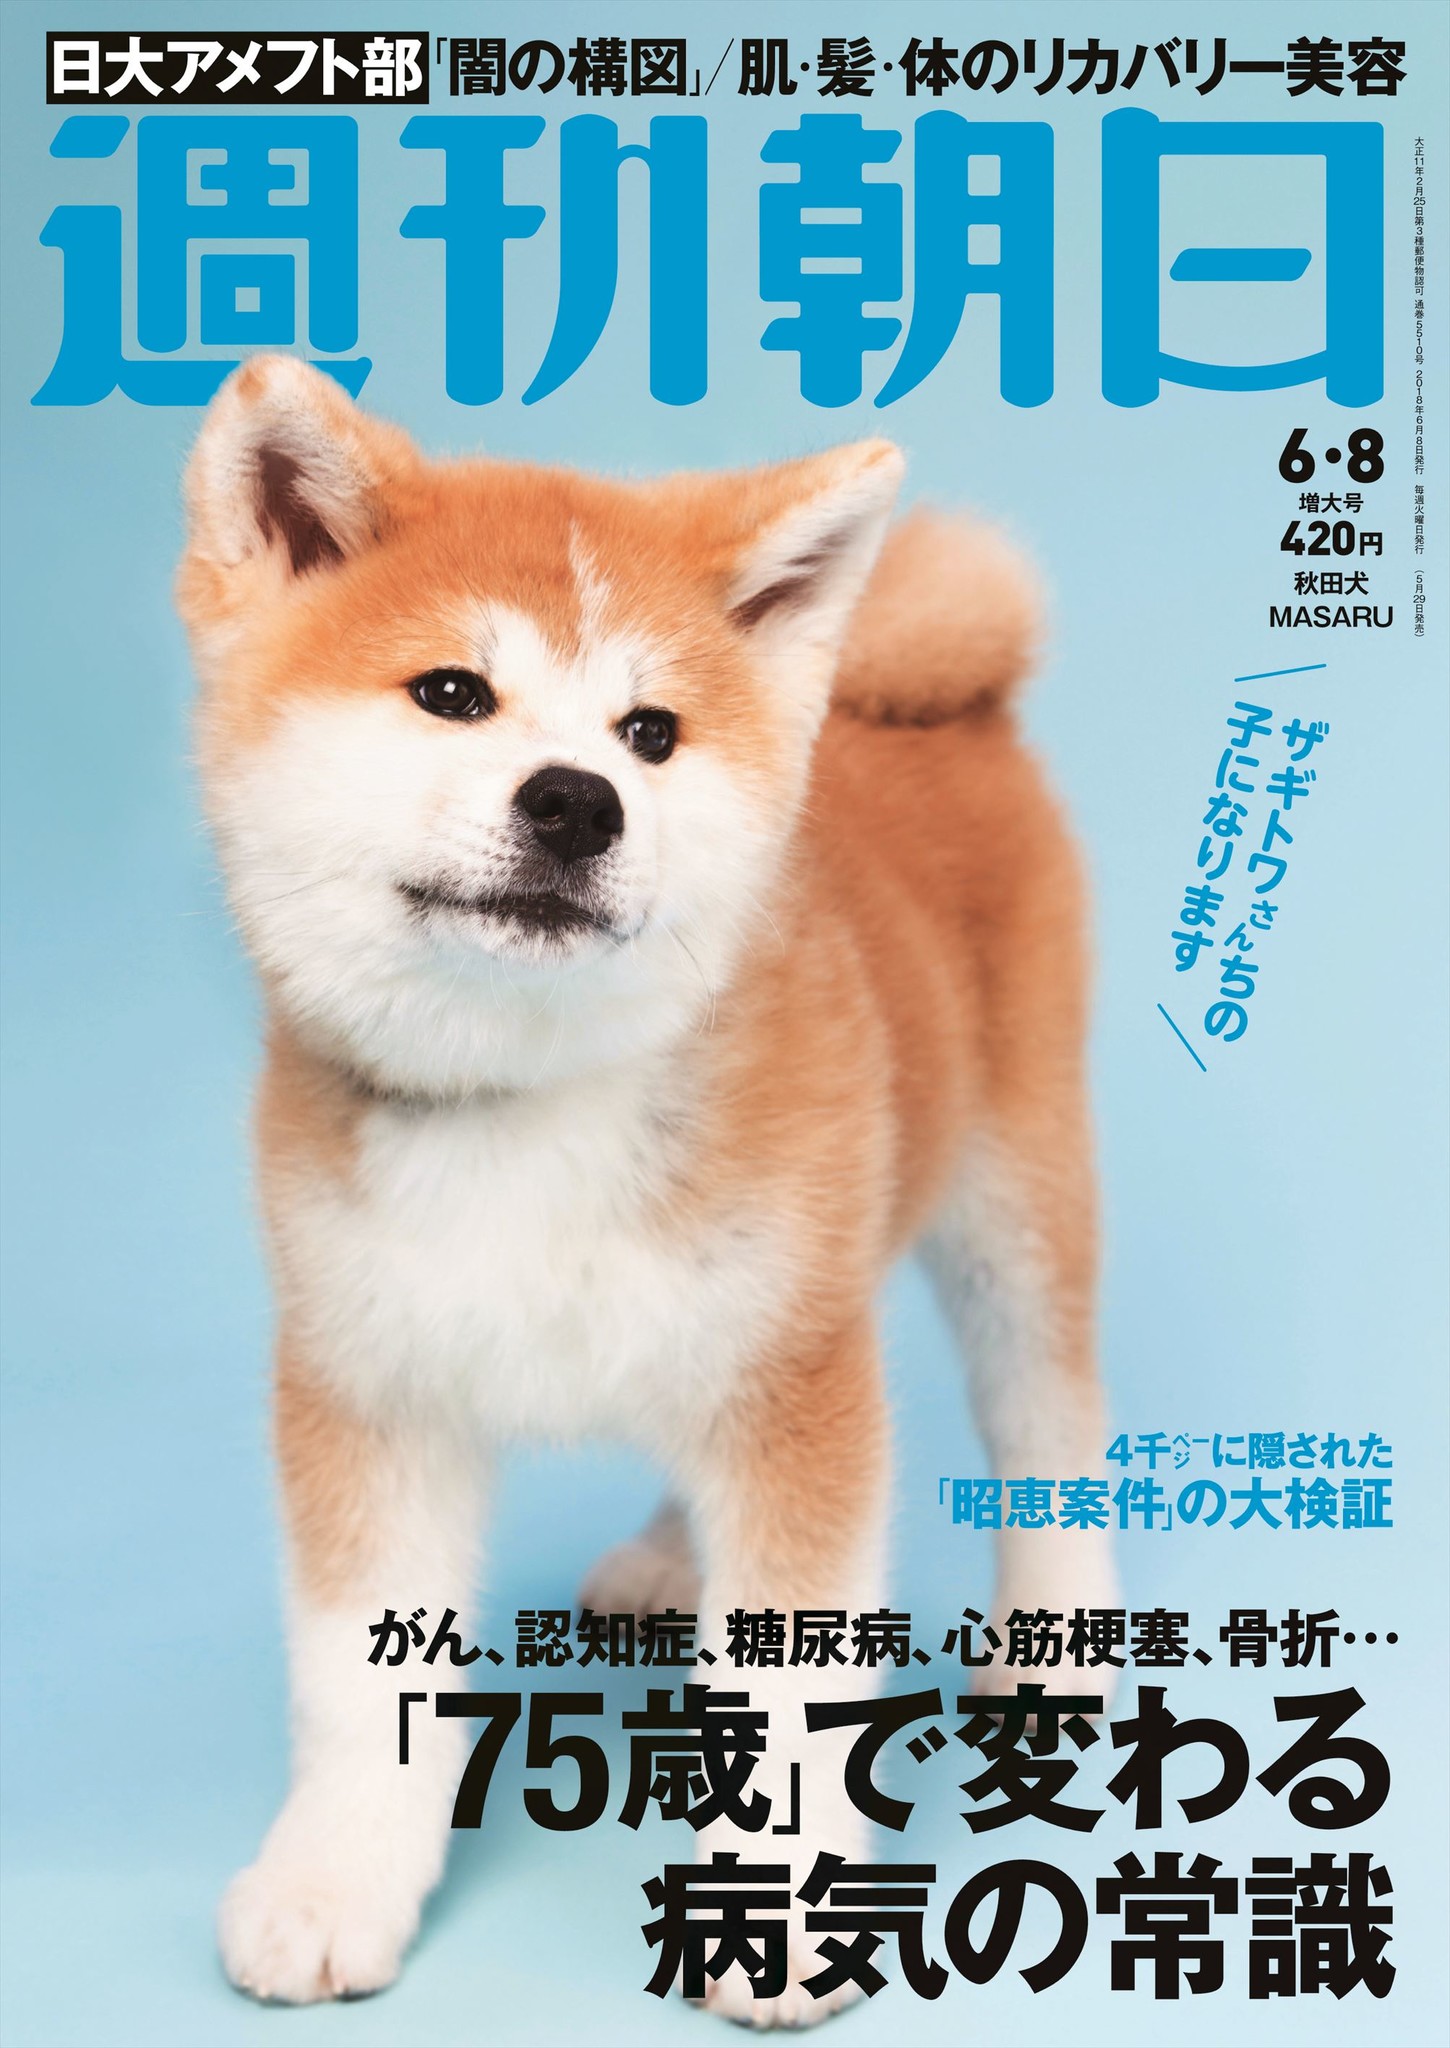 史上初 週刊朝日 の表紙が 犬 ザギトワ選手の秋田犬masaruちゃんが起用 株式会社朝日新聞出版のプレスリリース